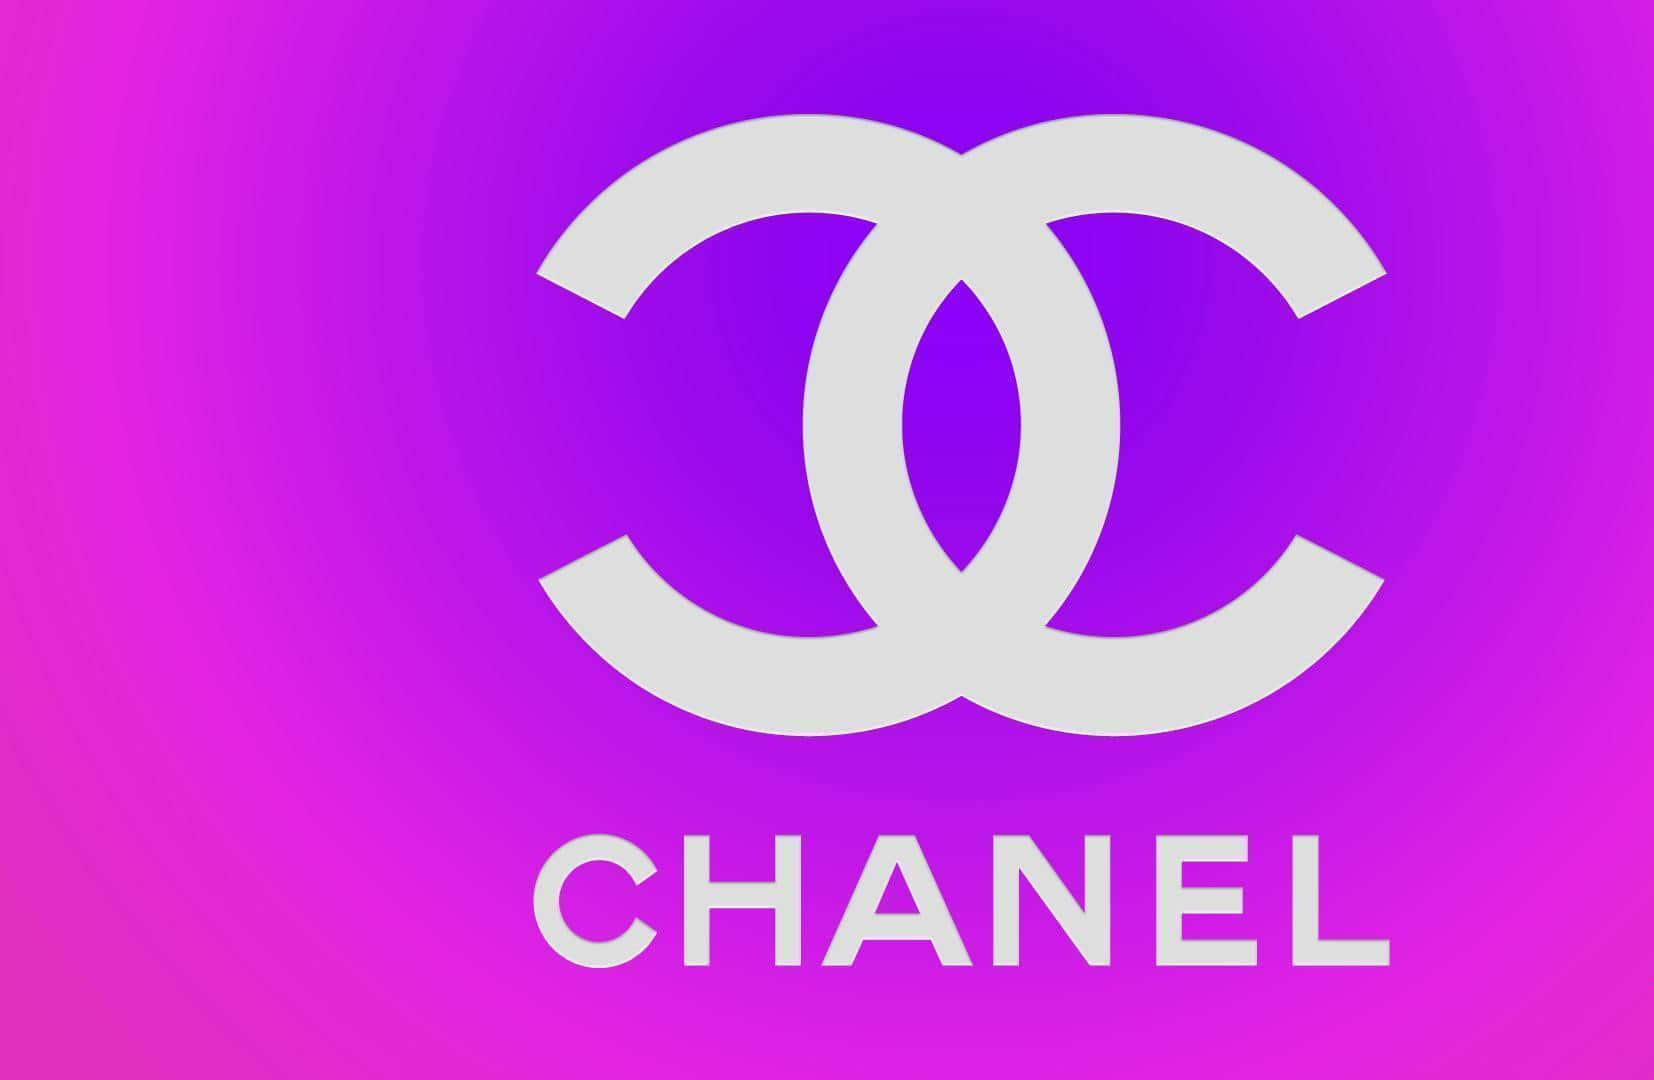 Iconicologo Di Chanel In Elegante Bianco E Nero.